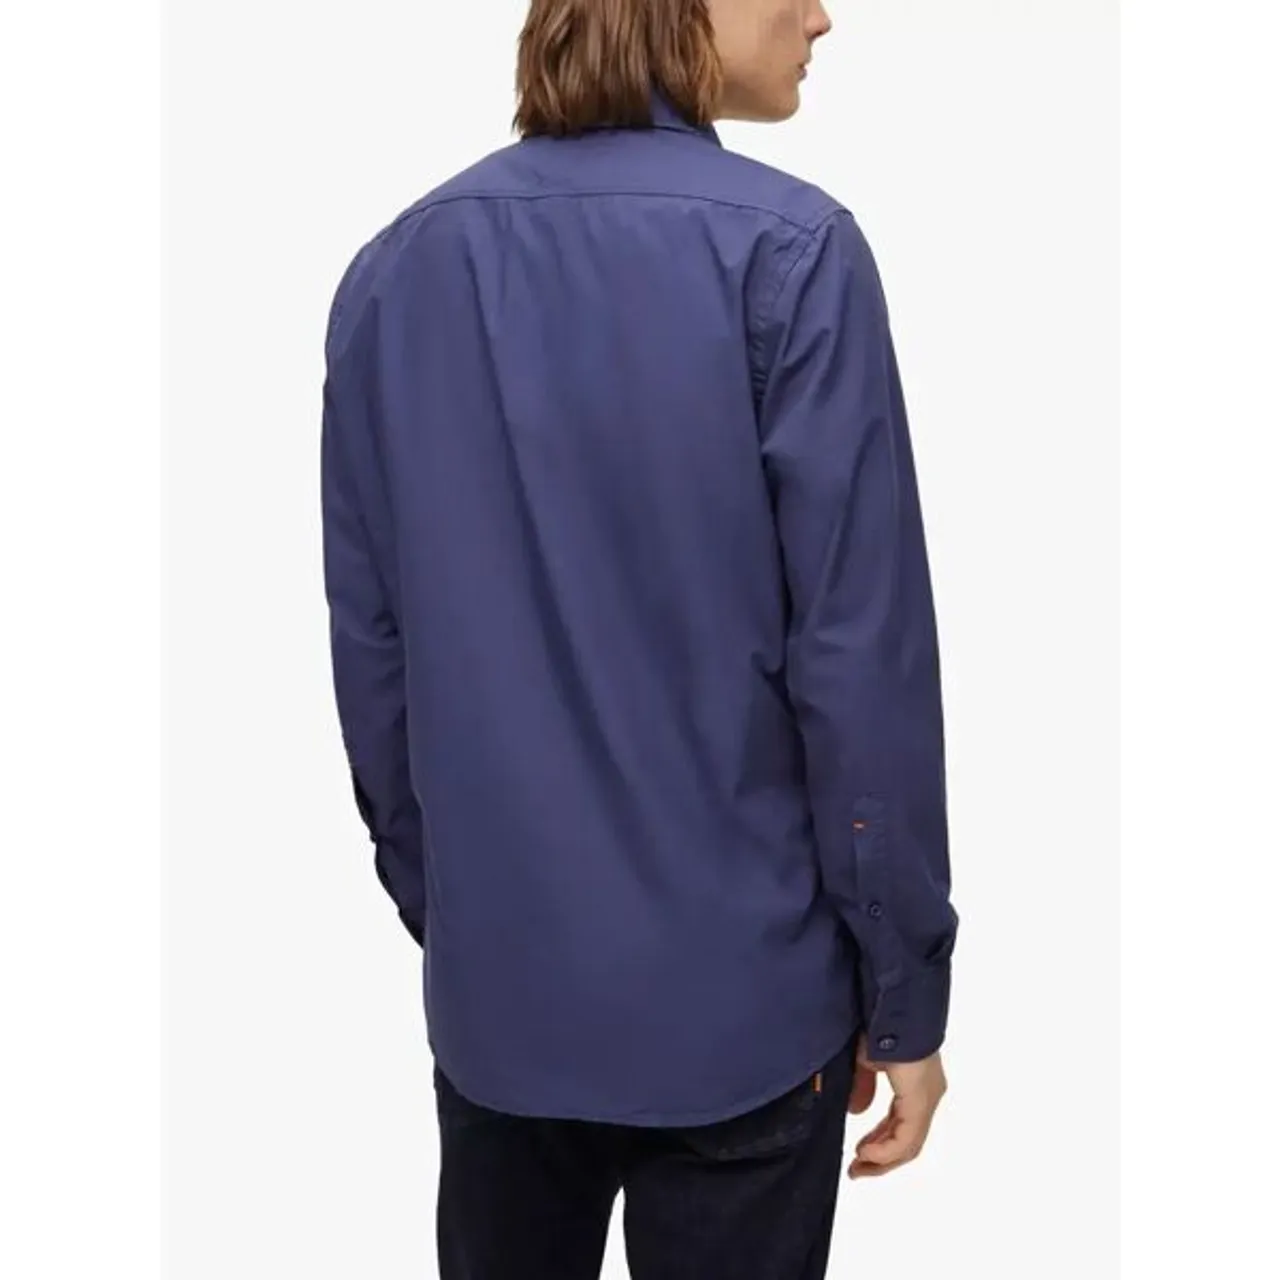 Hugo Boss BOSS Relegant Regular Fit Garment Dyed Shirt - Navy - Male